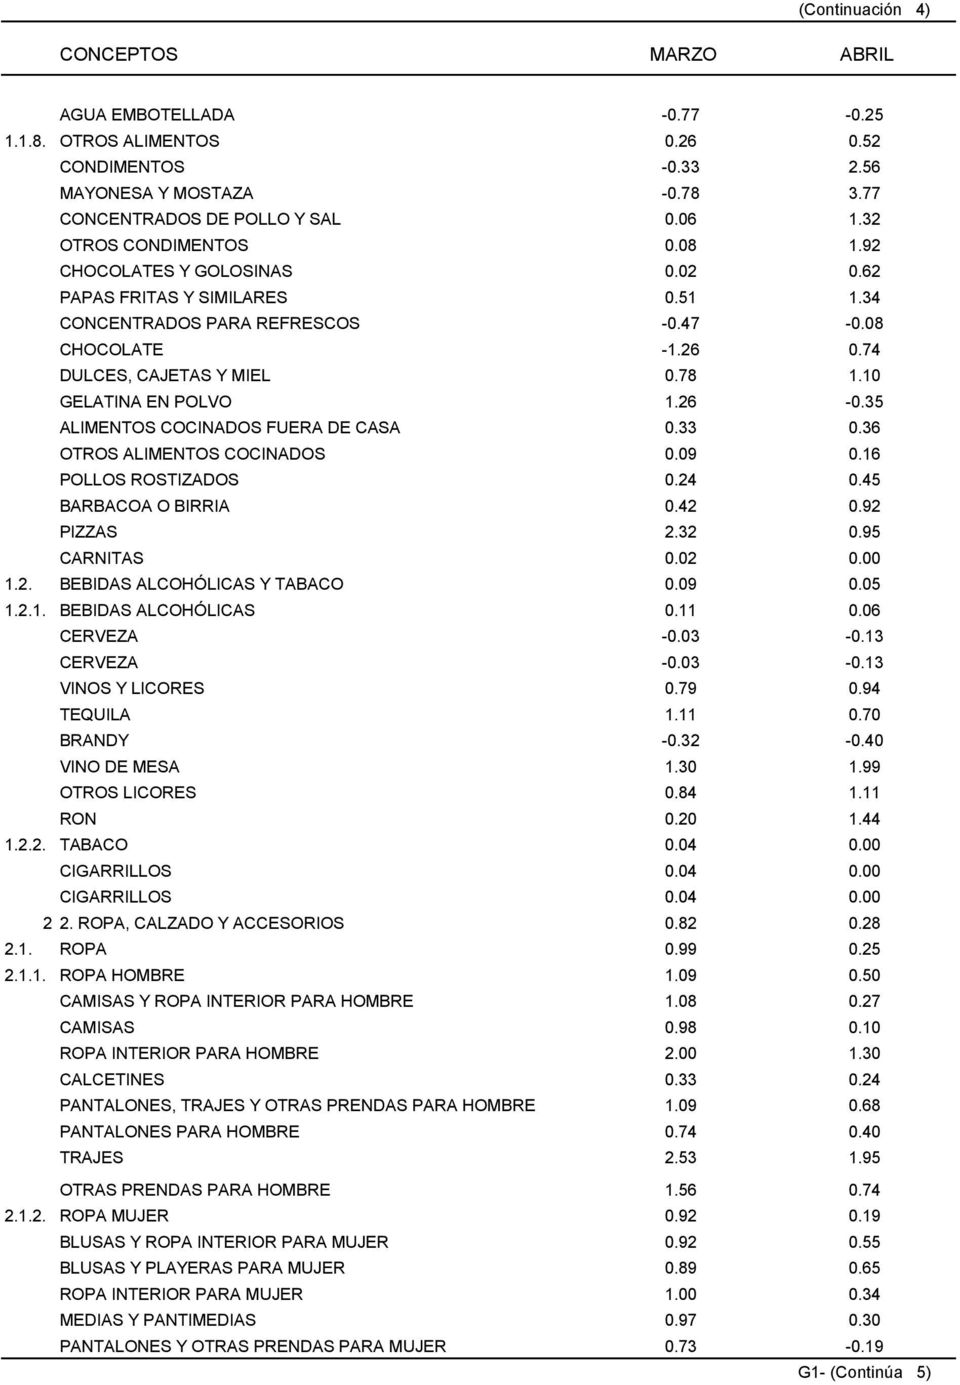 35 ALIMENTOS COCINADOS FUERA DE CASA 0.33 0.36 OTROS ALIMENTOS COCINADOS 0.09 0.16 POLLOS ROSTIZADOS 0.24 0.45 BARBACOA O BIRRIA 0.42 0.92 PIZZAS 2.32 0.95 CARNITAS 0.02 0.00 1.2. BEBIDAS ALCOHÓLICAS Y TABACO 0.